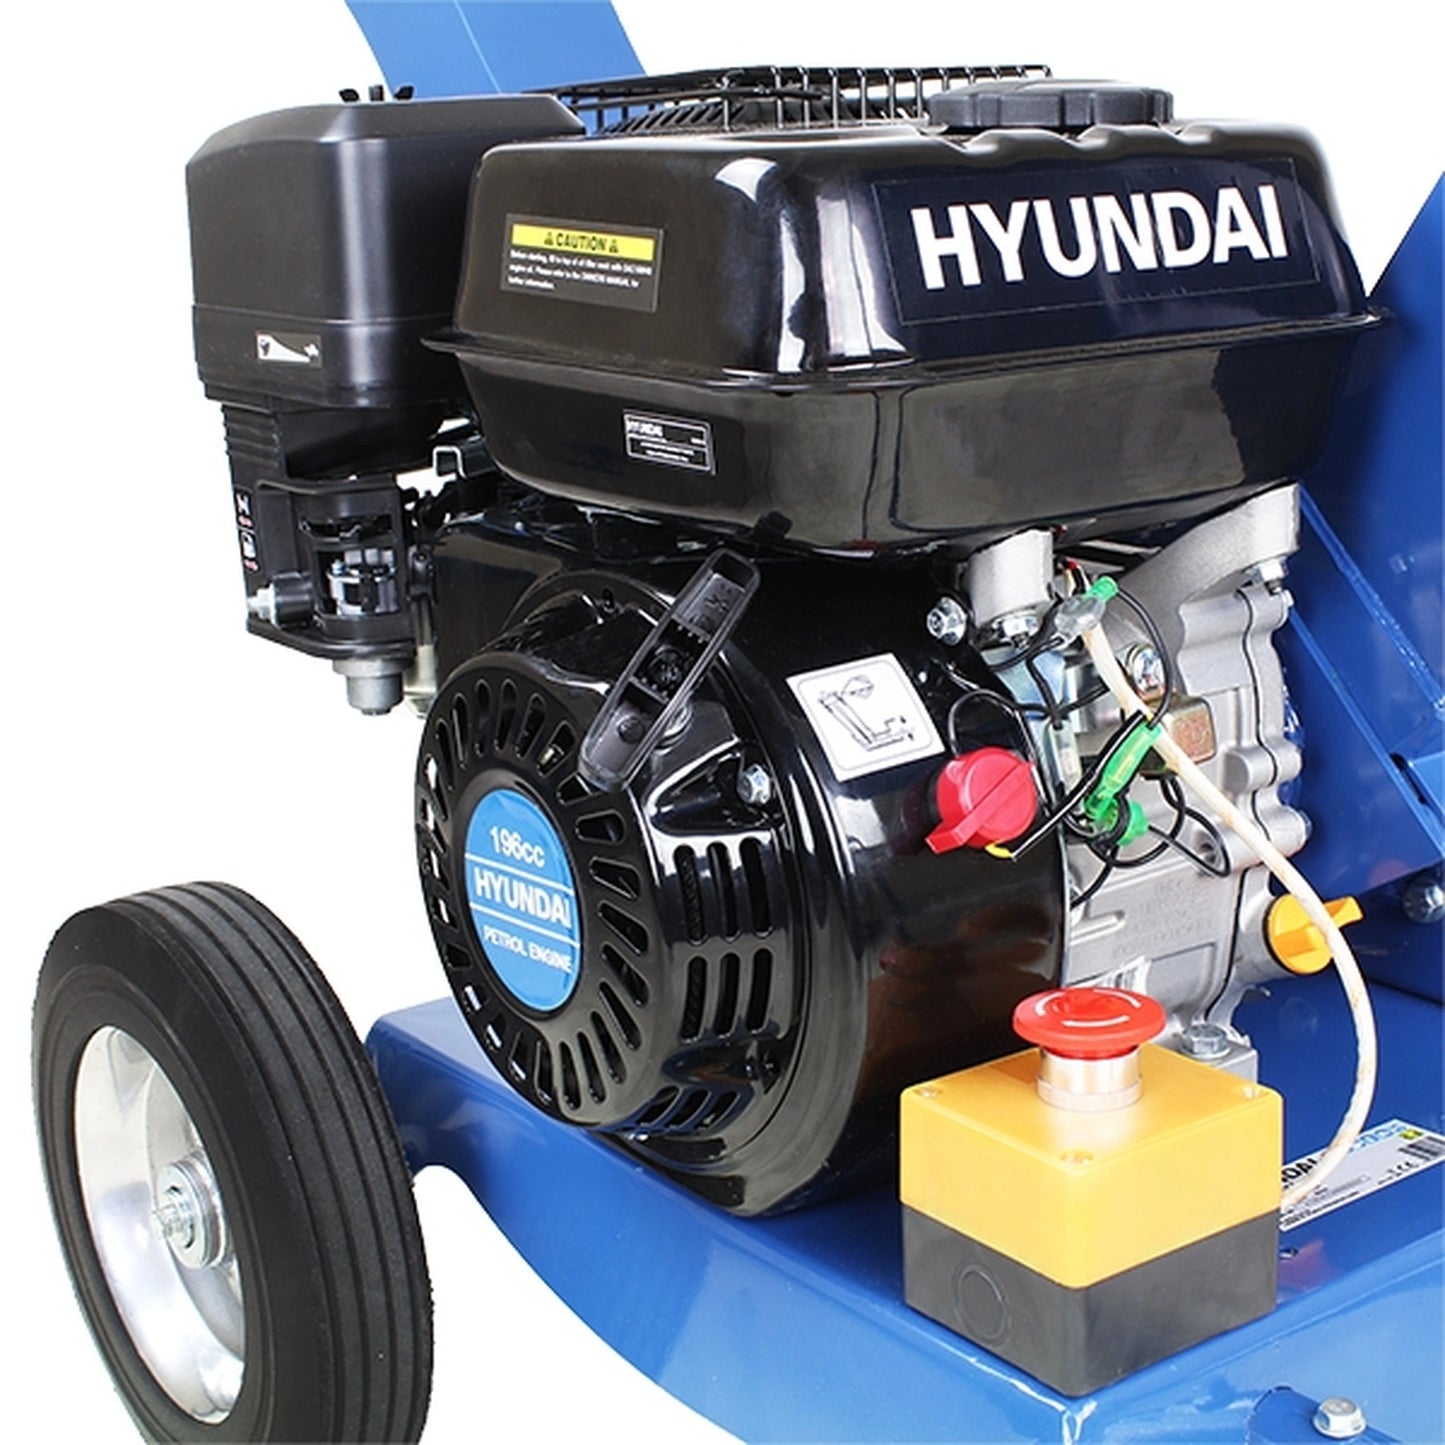 Hyundai HYCH6560 Petrol Wood Chipper & Shredder